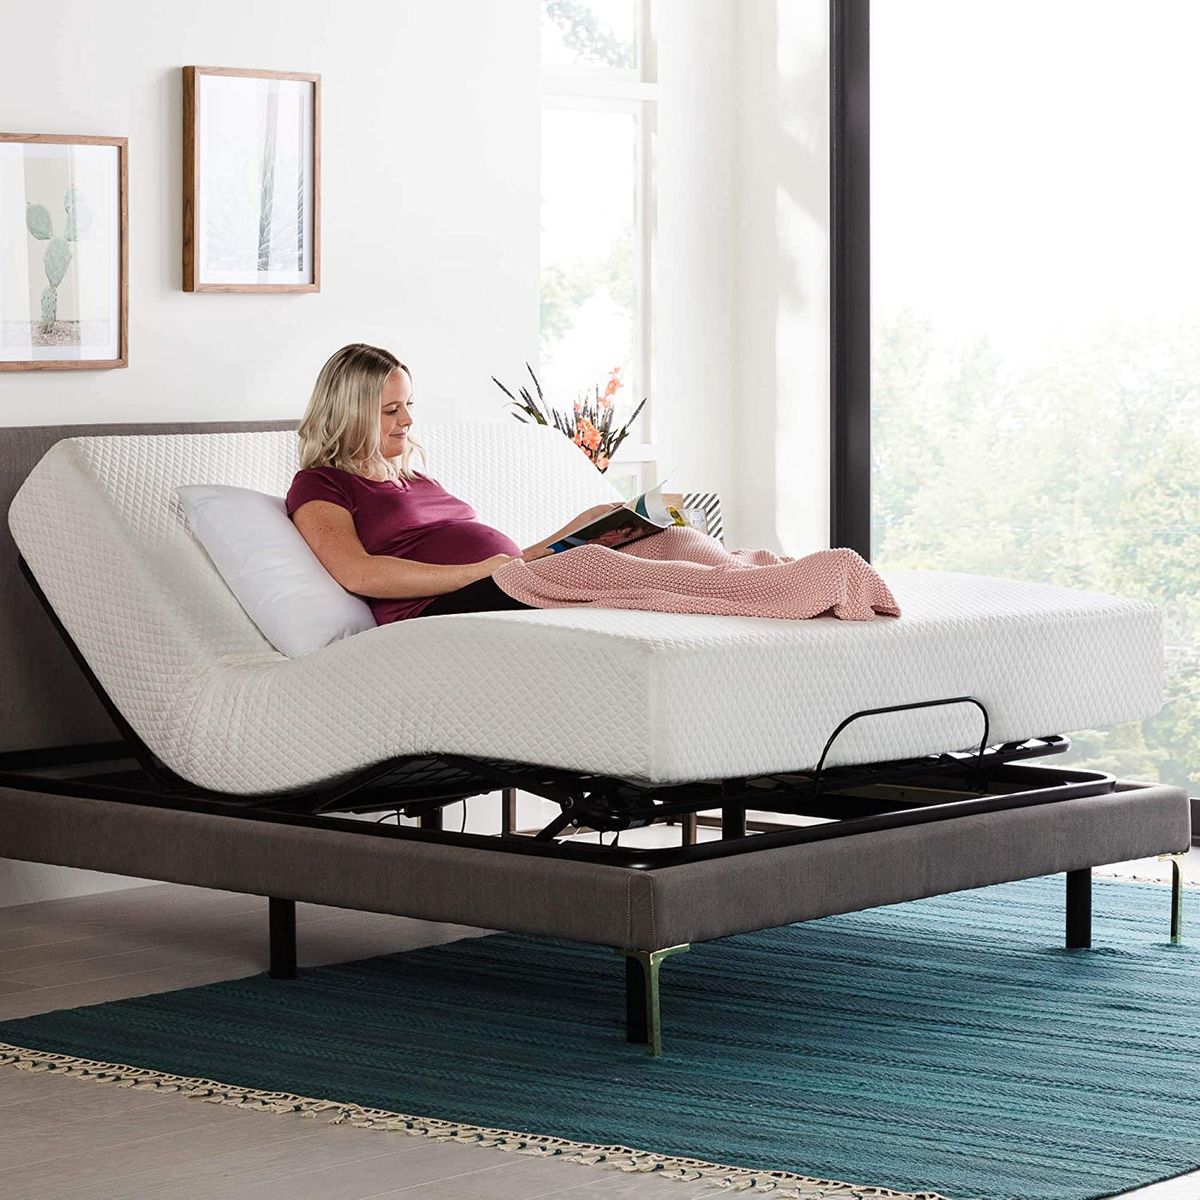 10 Best Adjustable Bed Bases 2021 The, Adjustable Bed Frame Only